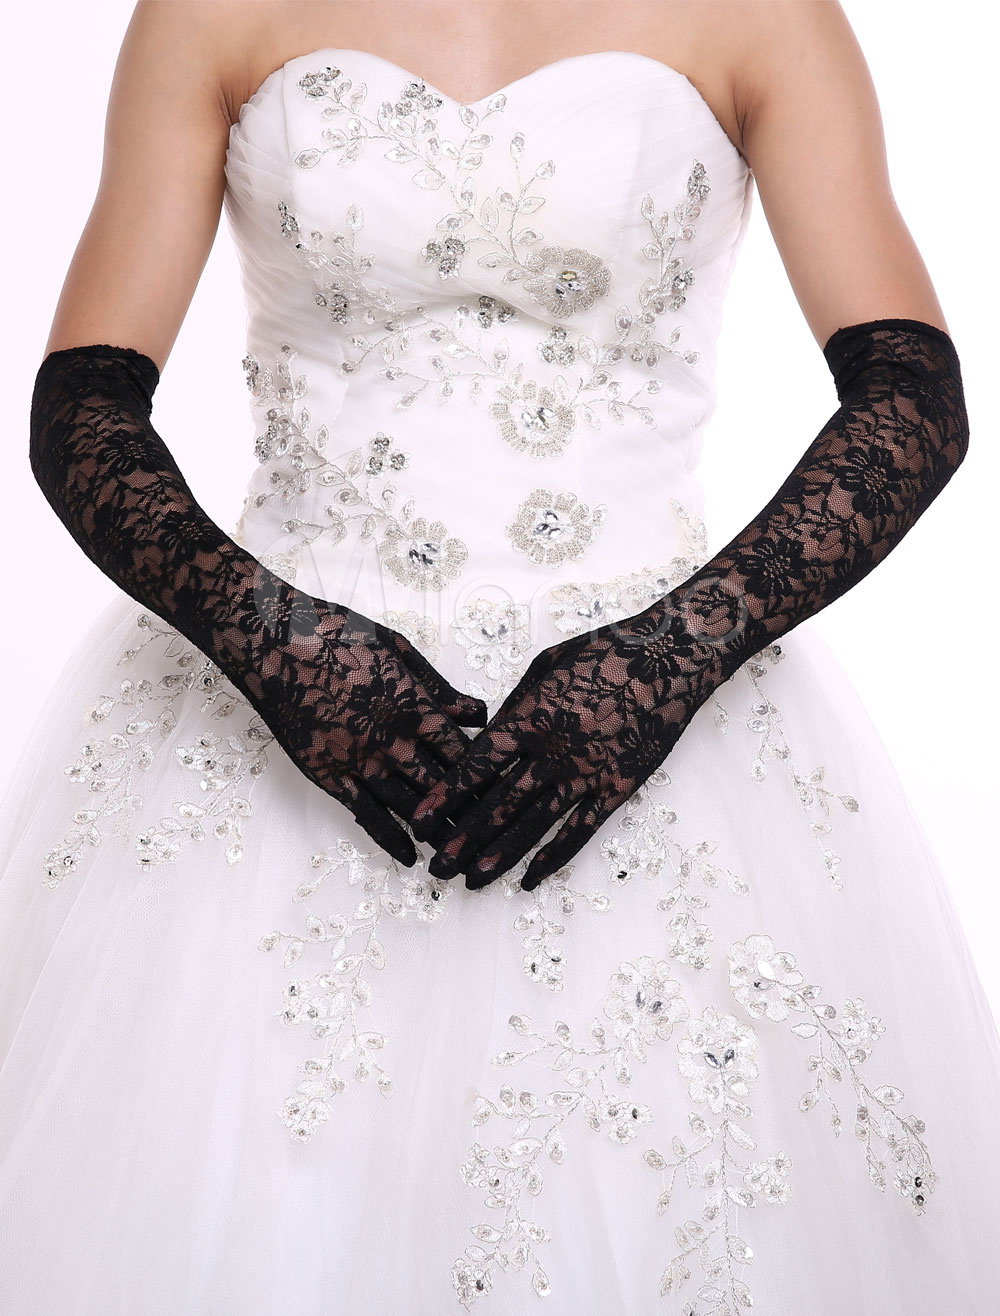 Hosszú, csipke menyasszonyi kesztyű - fekete és fehér színben (A Ft ár tájékoztató jellegű)